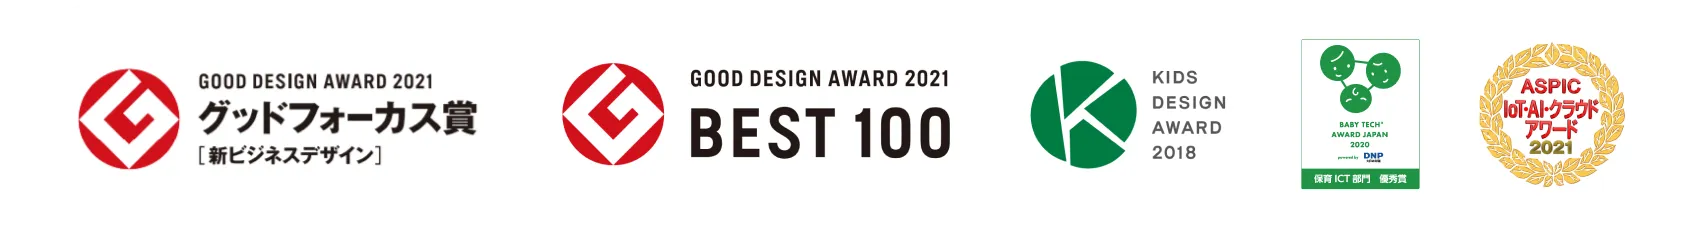 グッドフォーカス賞、GOOD DESIGN AWARD 2021 BEST 100,KIDS DESIGN AWARD2018,ASPIC IoT・AI・クラウドアワード2021